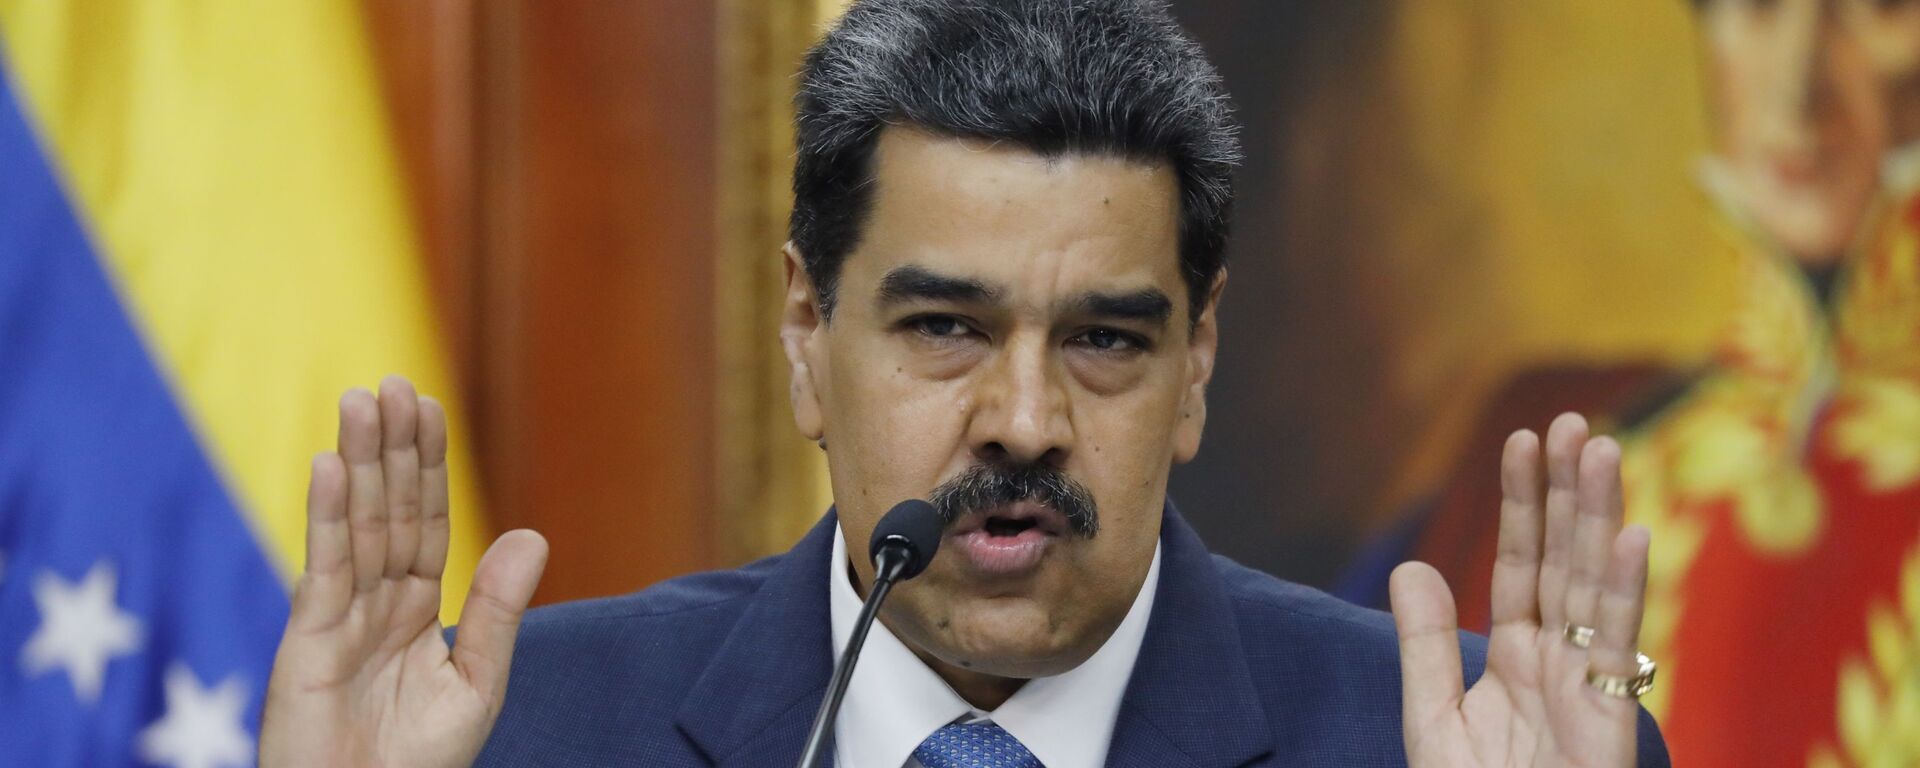 El presidente de Venezuela, Nicolás Maduro - Sputnik Mundo, 1920, 20.08.2021